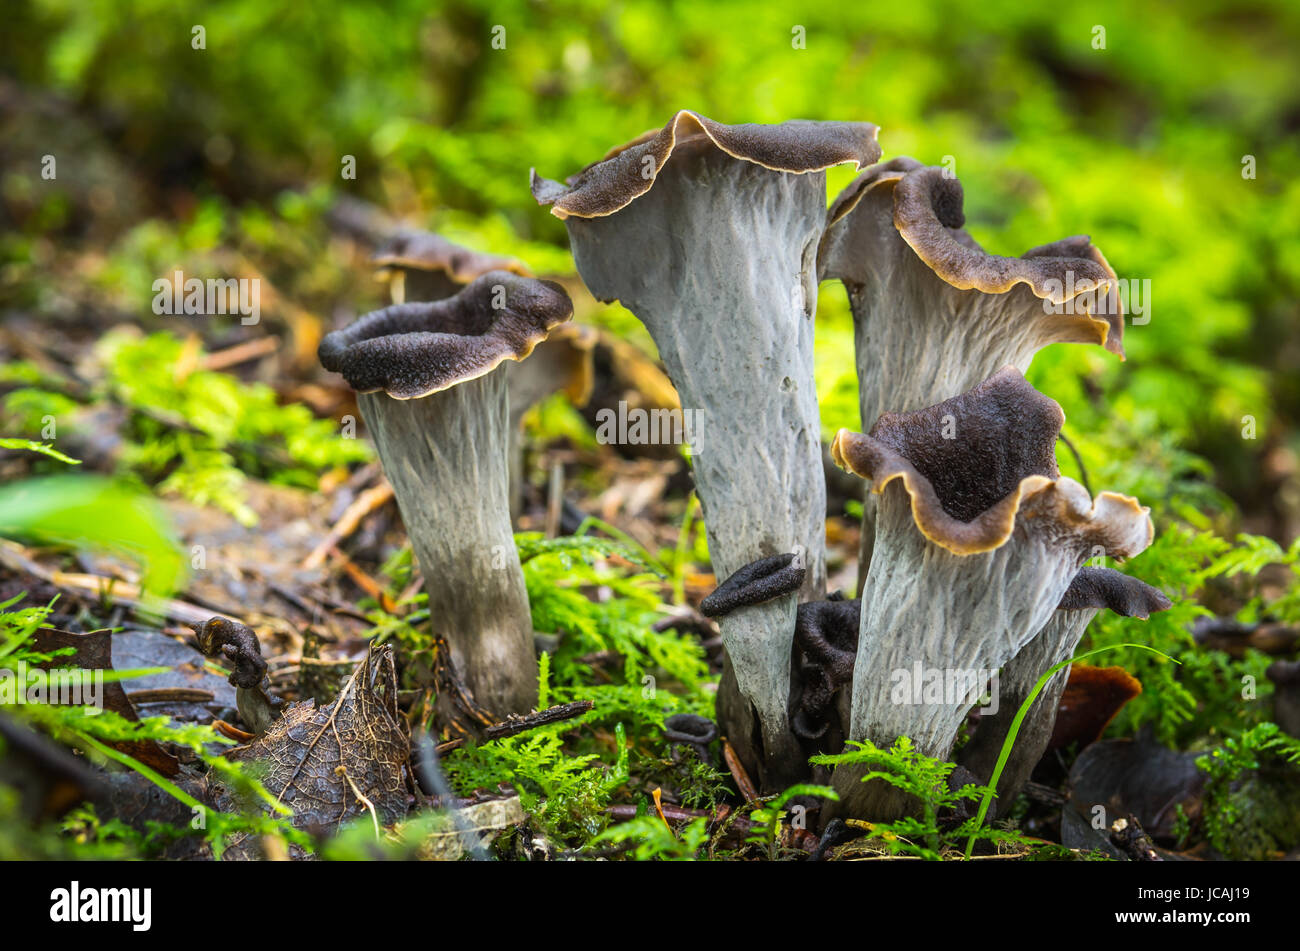 Edible mushrooms with excellent taste, Craterellus cornucopioides Stock Photo